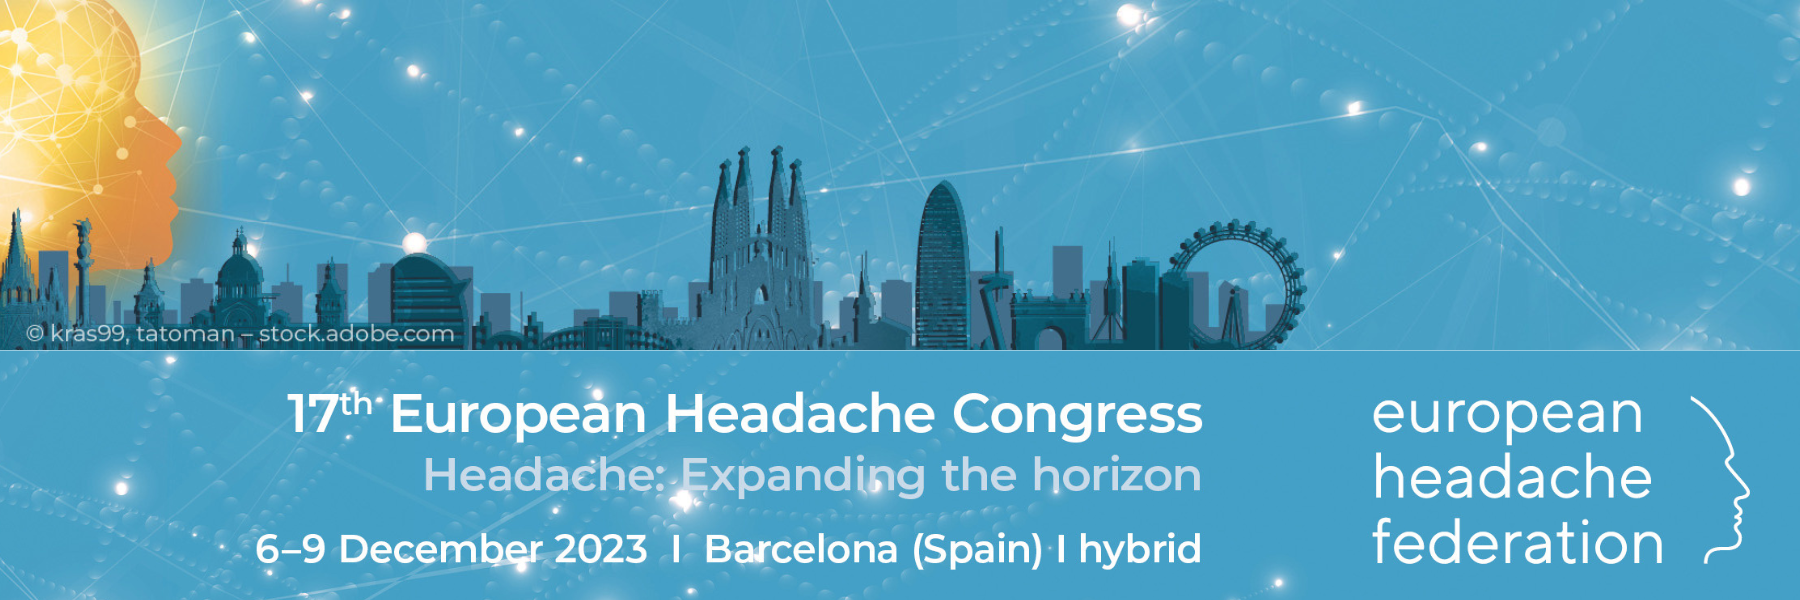 ~/Content/Images/News/17 European Headache Congress.png